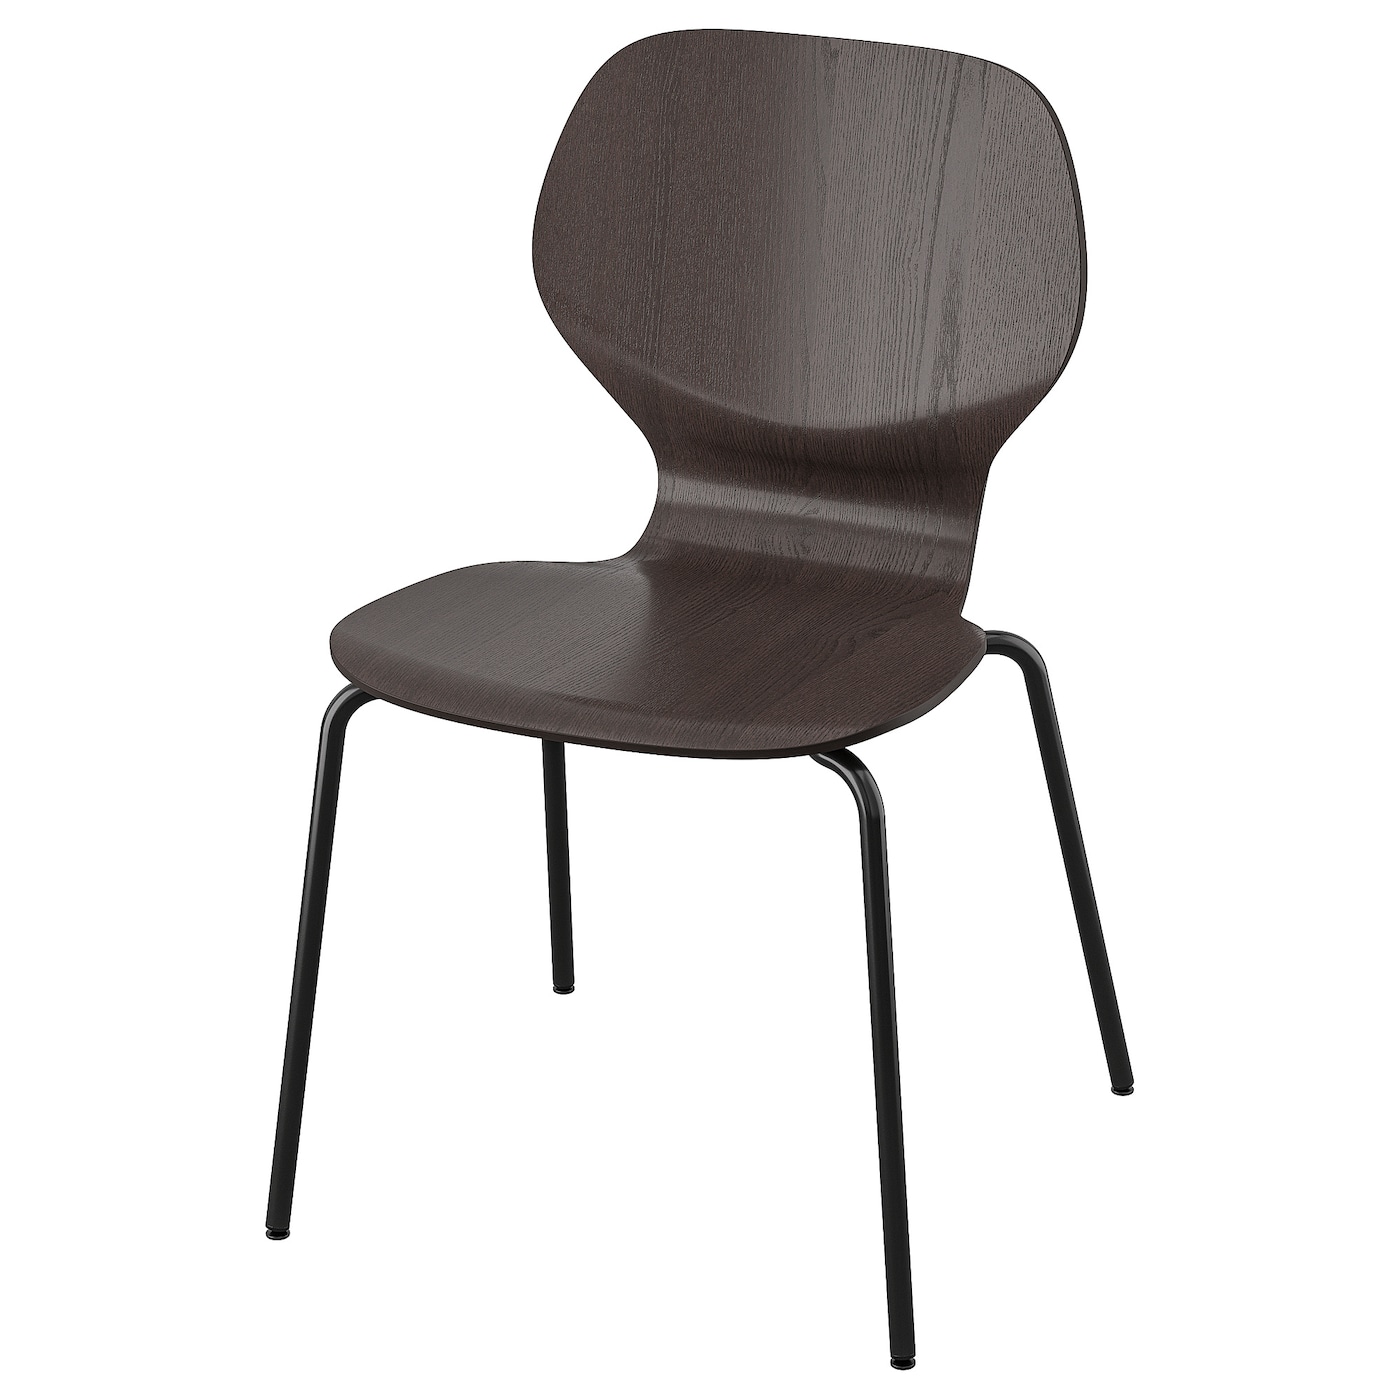 SIGTRYGG 西格图椅子深褐色/谢法斯特黑色- IKEA